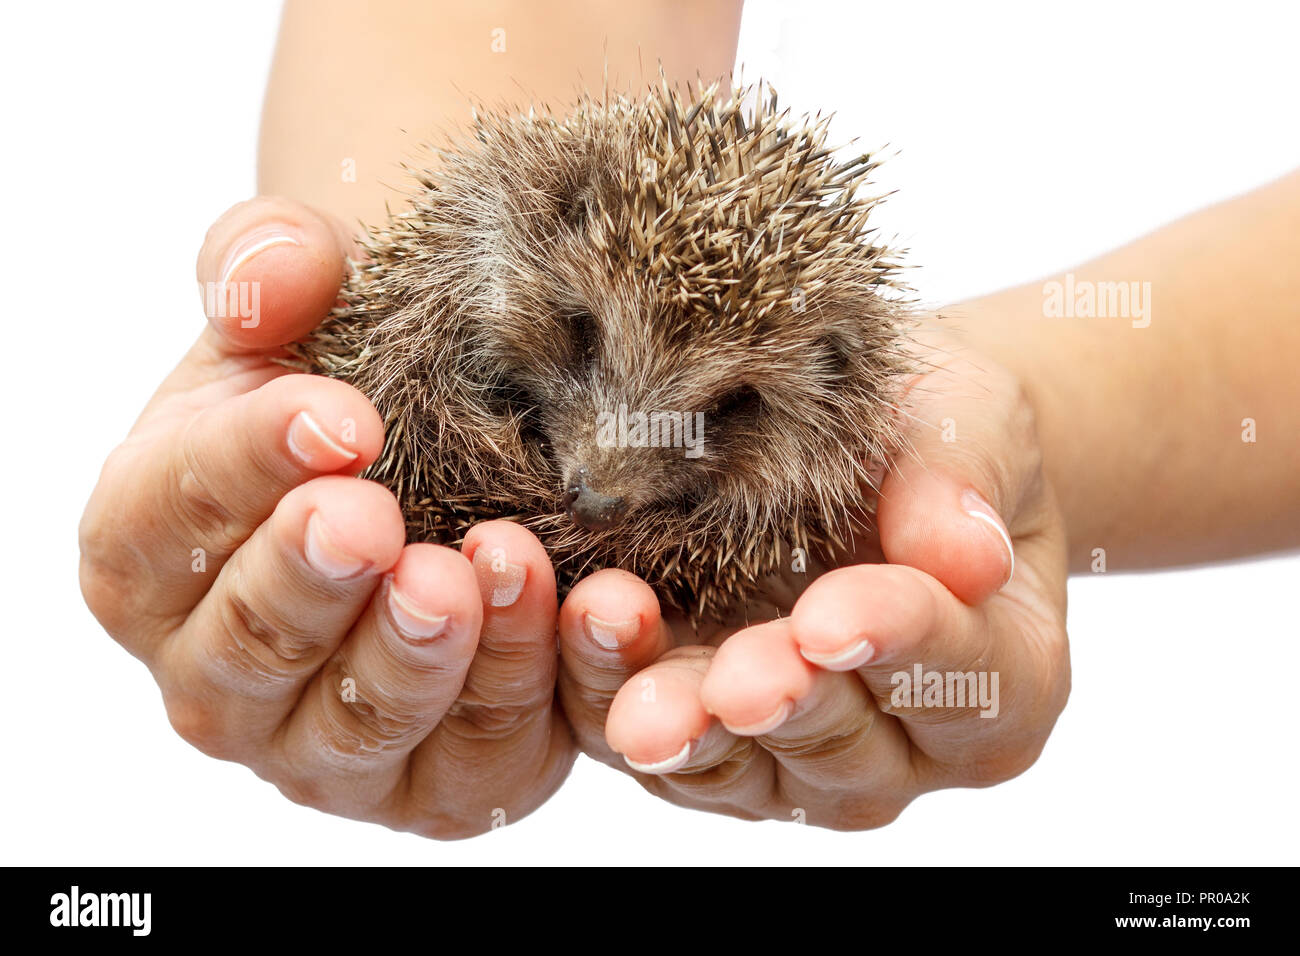 Les jeunes hedgehog dans des mains humaines. Petit animal a besoin de protection. La protection de l'environnement. Profondeur de champ. Fond isolé blanc Banque D'Images